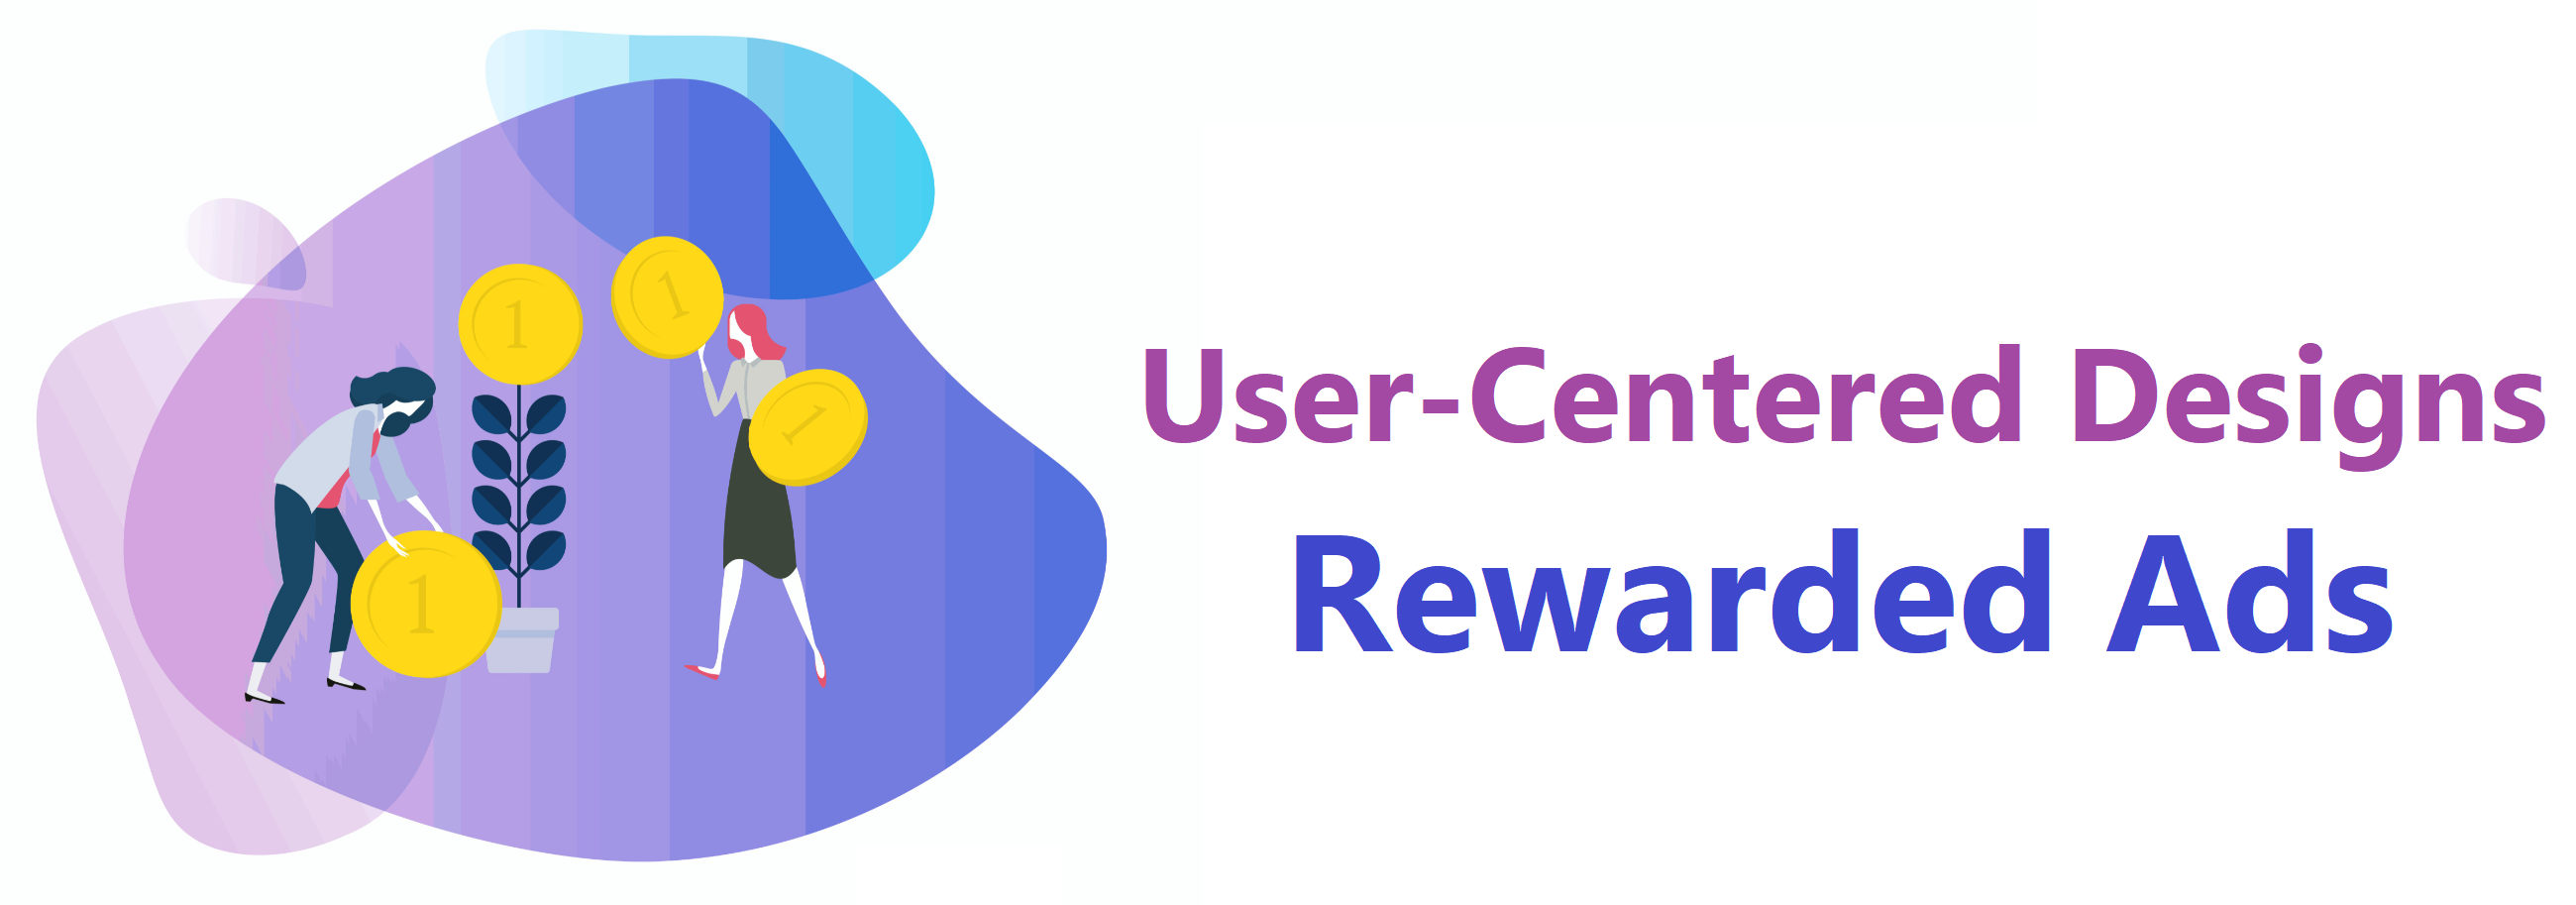 Rewarded Video. Centre user